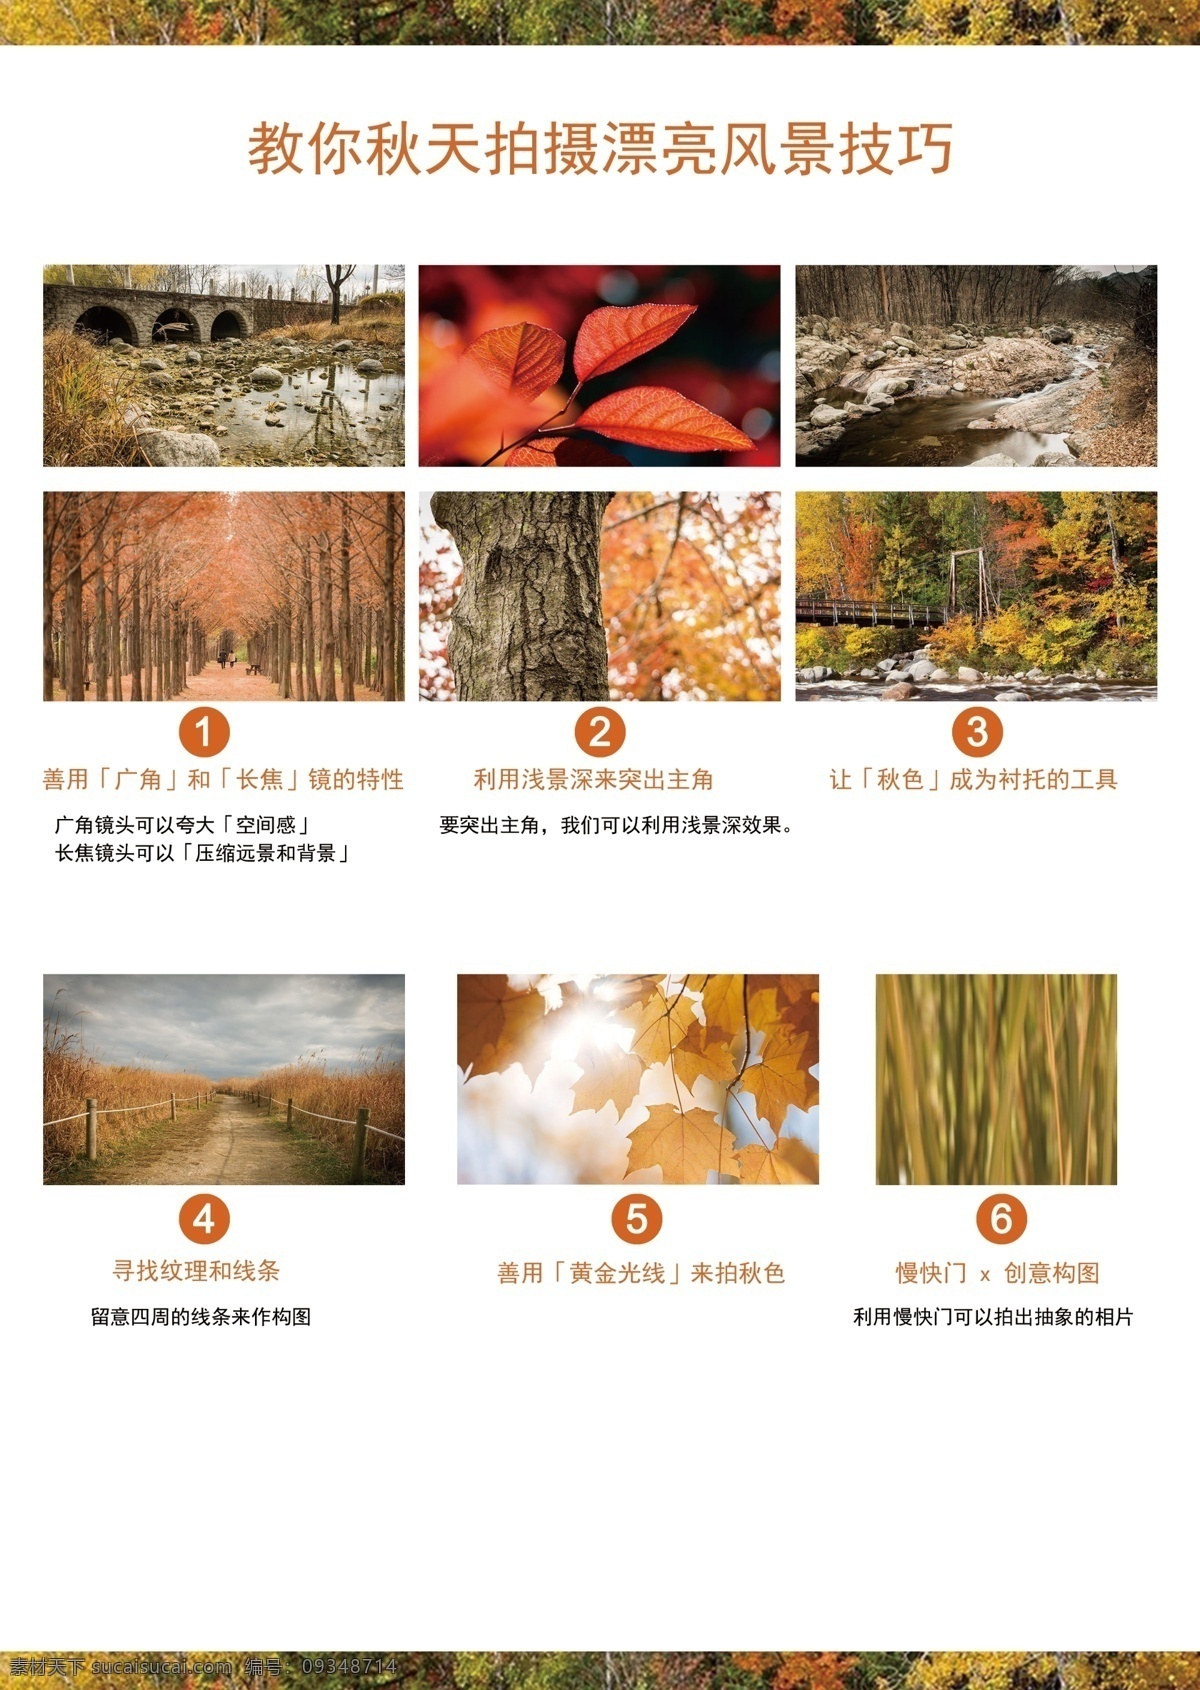 秋天 拍 风景 照片 技巧 枫叶 树 石涧 流水 桥 意境 红色叶子 白色